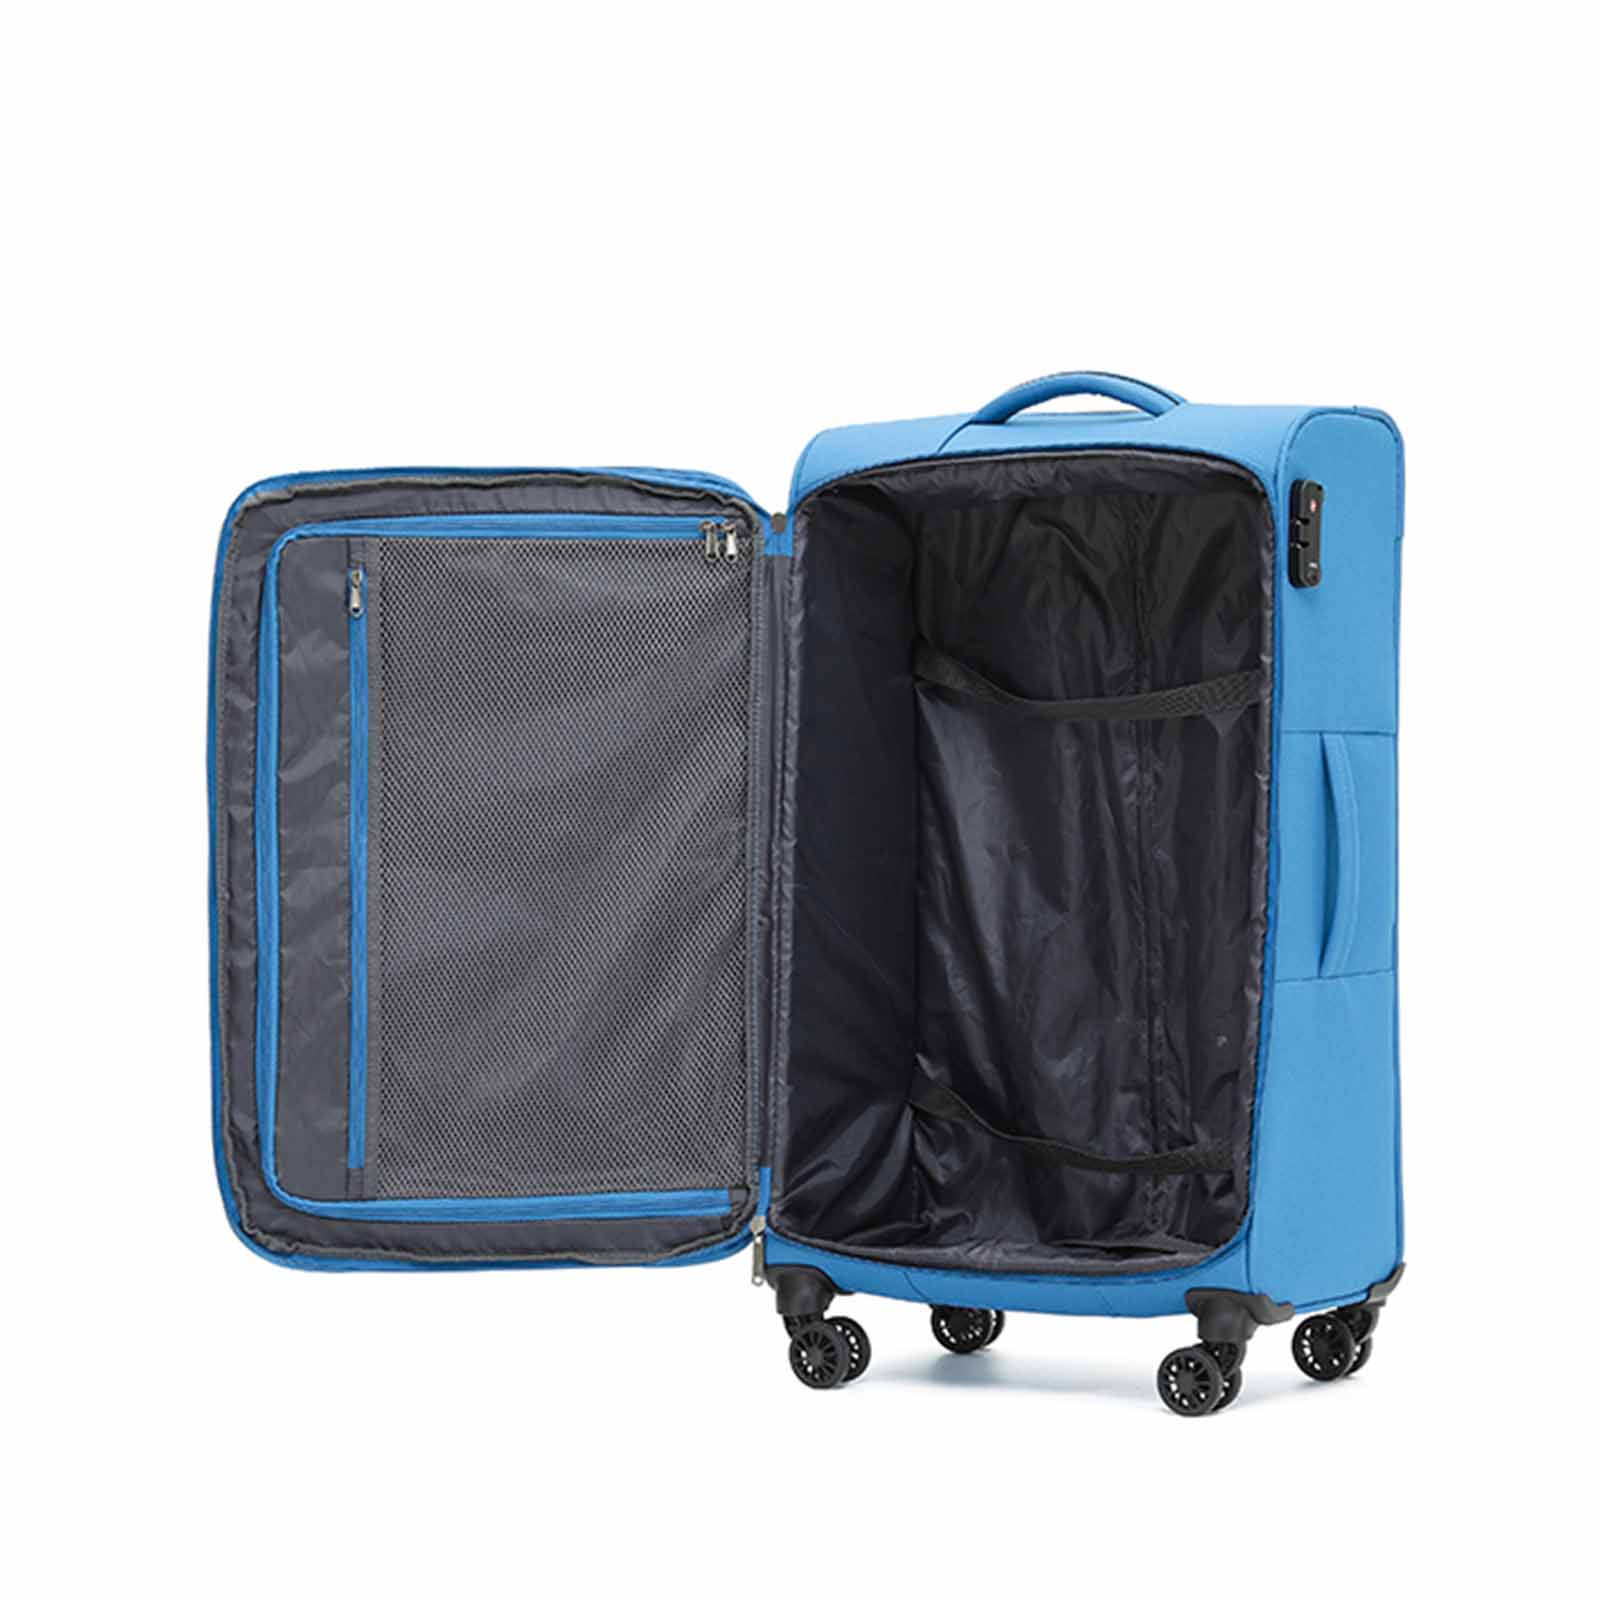 Tosca-Aviator-4-Wheel-Large-Suitcase-Blue-Open